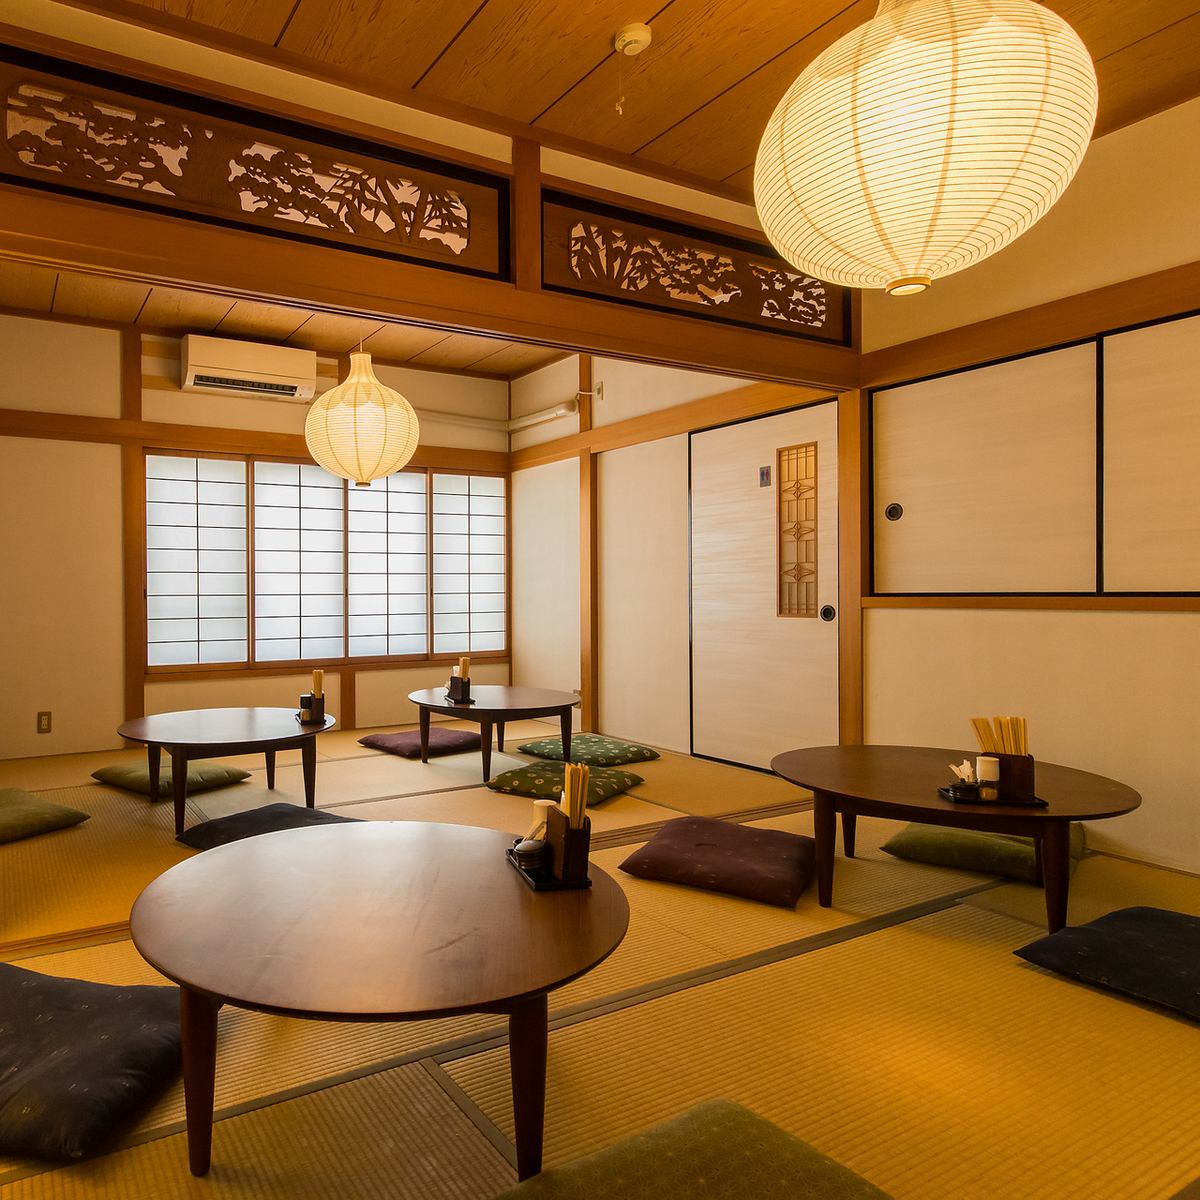 日式房間內漂浮的燈籠柔和的光線營造出非凡的氛圍。